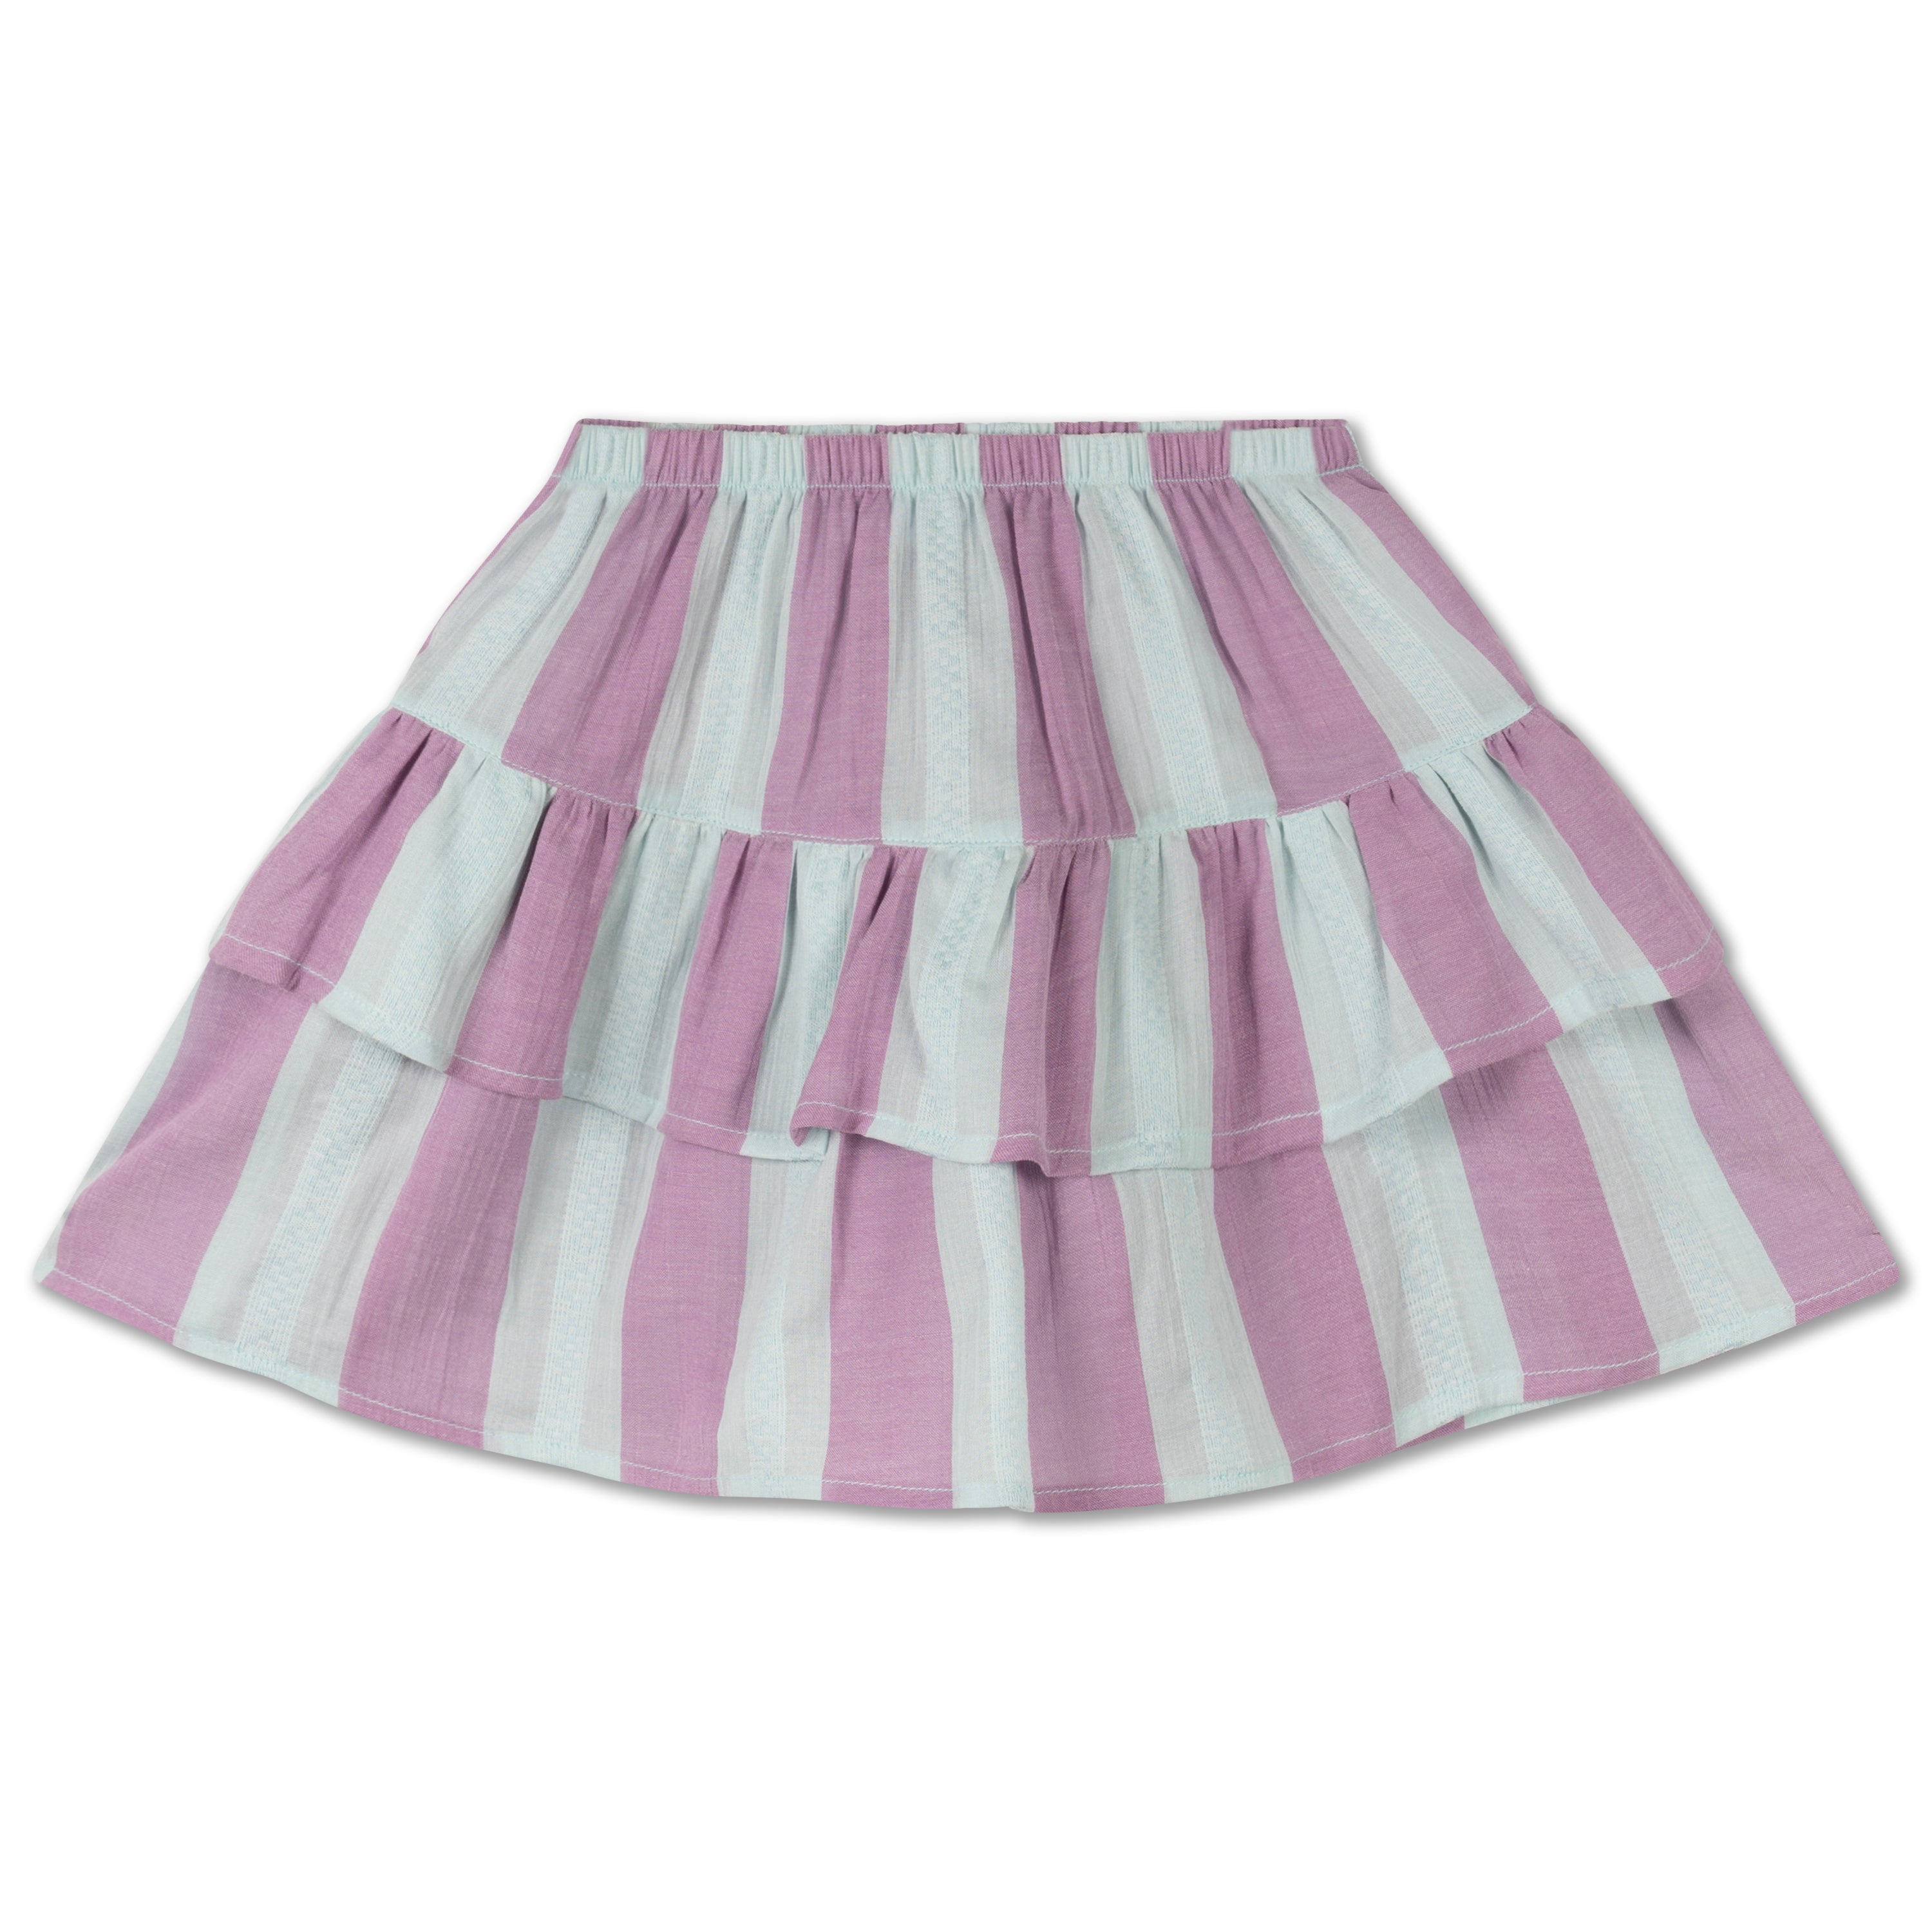 Repose ams - poet skirt - soft aqua violet stripe